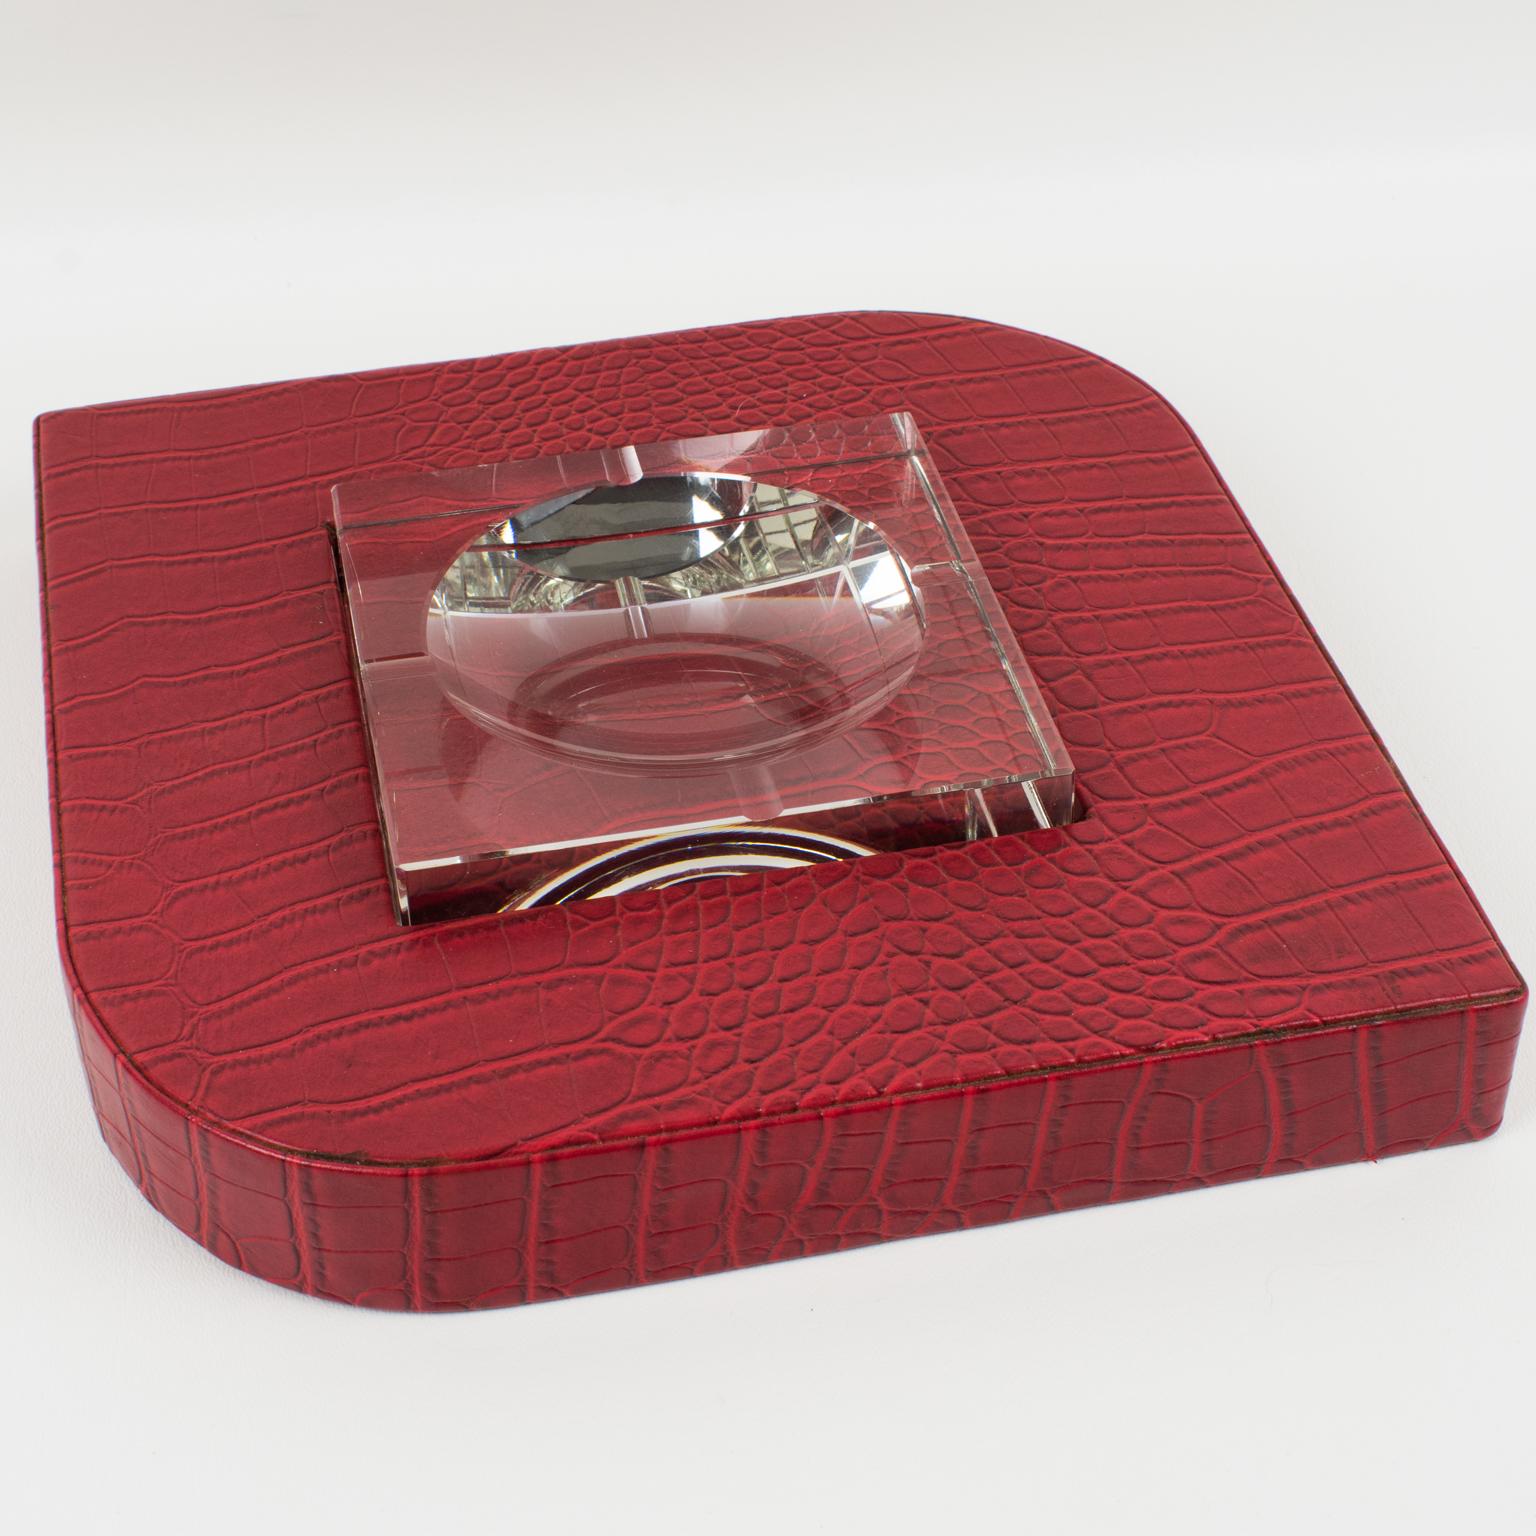 Cet élégant vide-poche moderniste en cuir rouge et cristaux, dont le design rappelle le travail de Dupre-Lafon, a été fabriqué dans les années 1950. Le cuir rouge gaufré au crocodile orne une base géométrique qui accueille un épais cendrier en